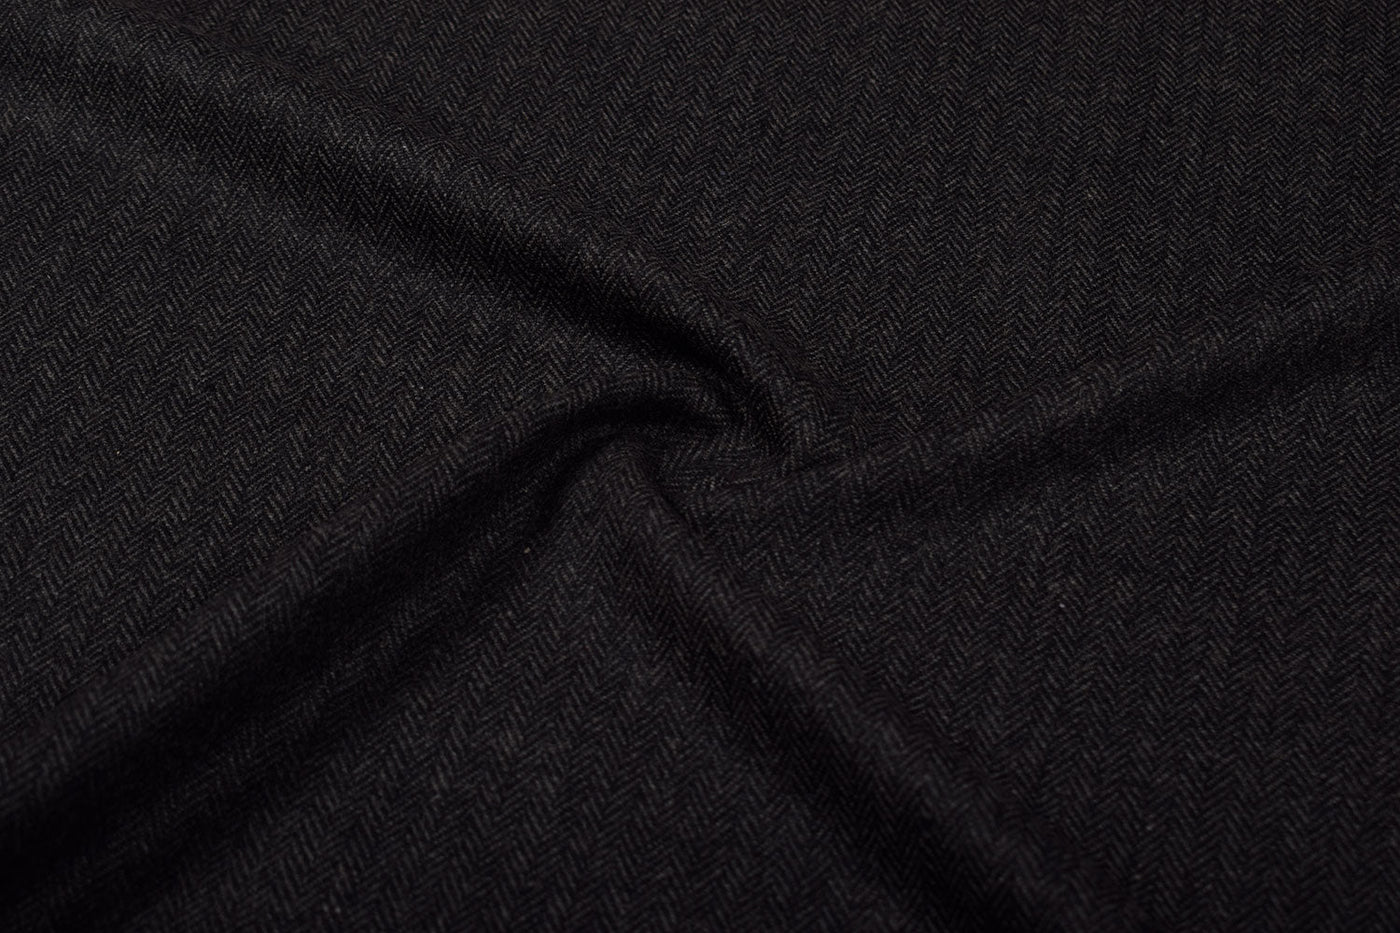 dark-grey-herringbone-tweed-wool-fabric-4715822